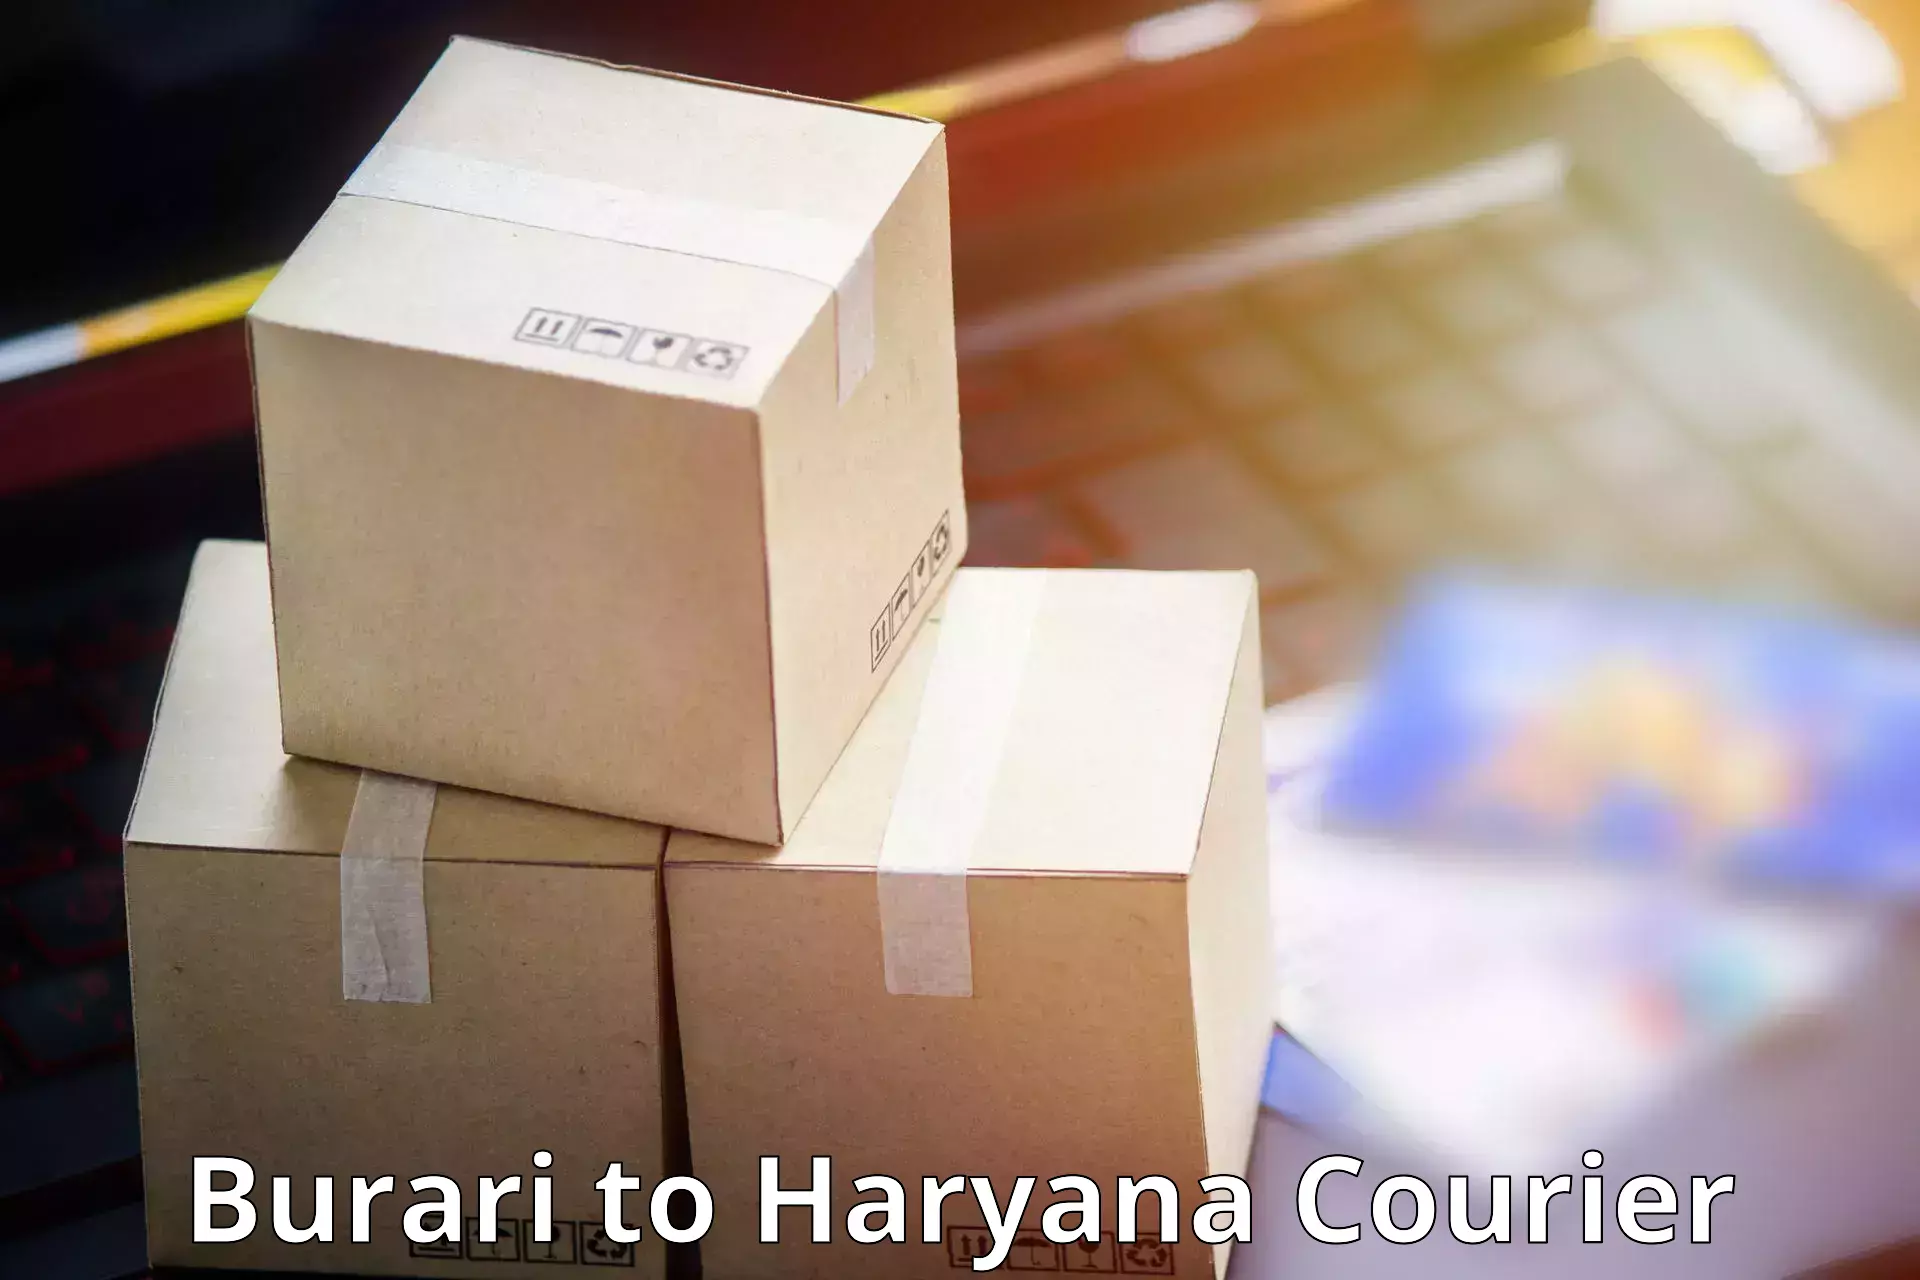 Express delivery network Burari to Kurukshetra University